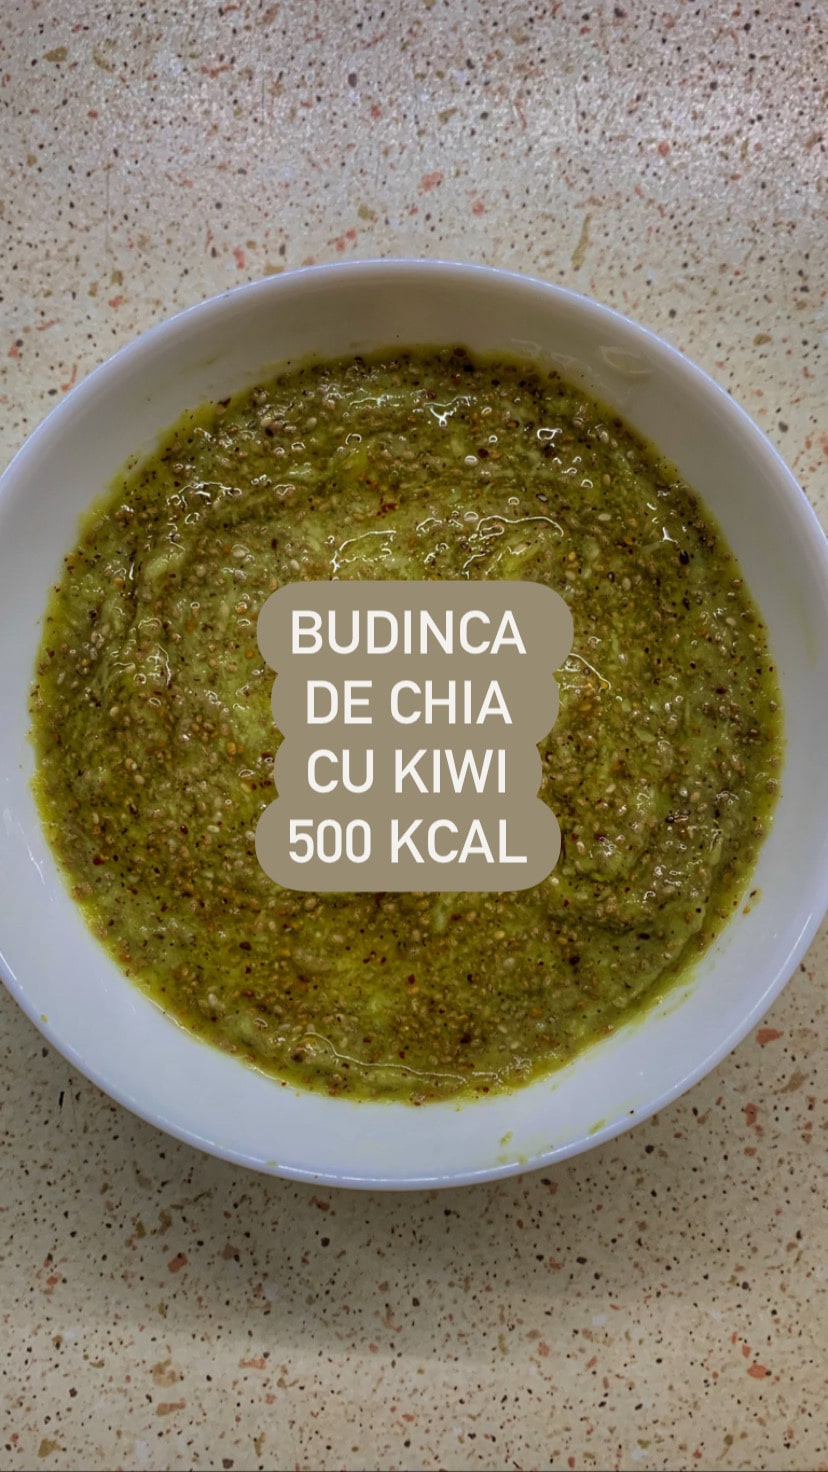 Budinca din chia si kiwi, 500 kcal